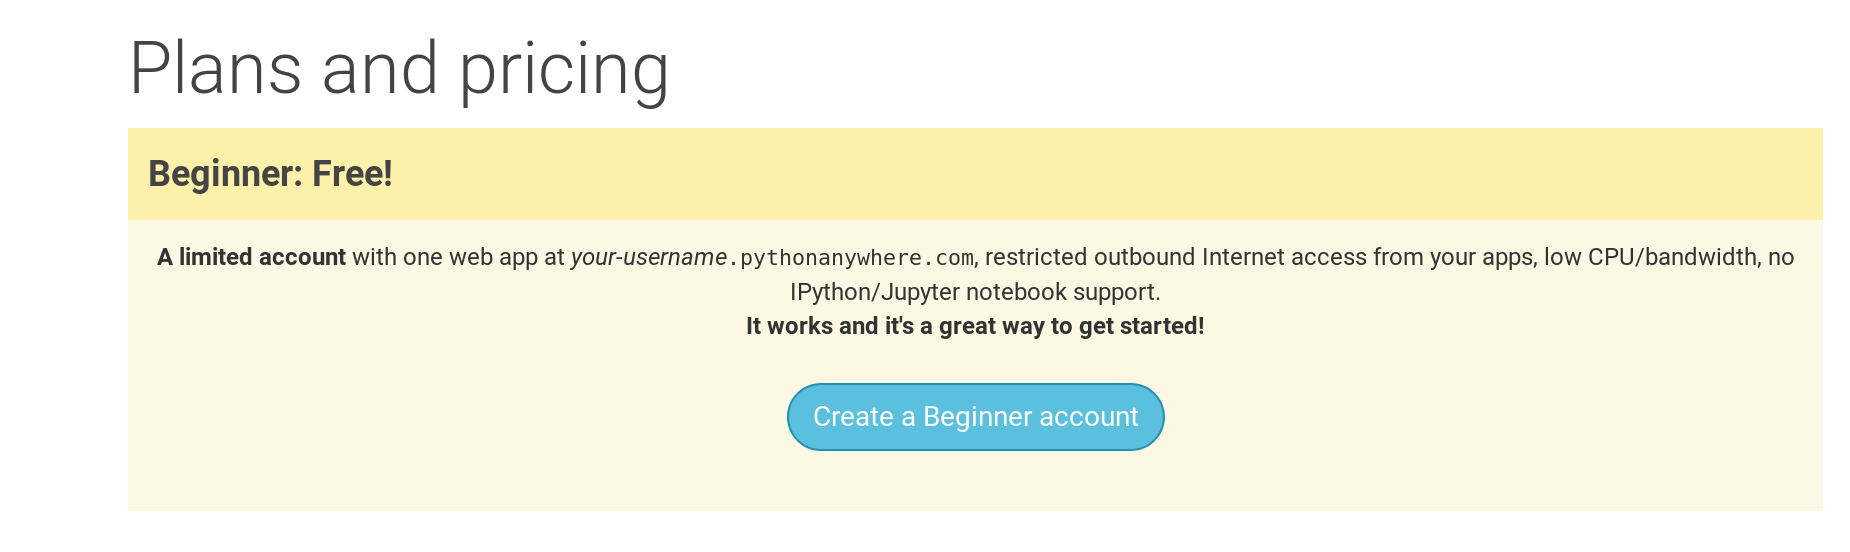 Ücretsiz 'Beginner' hesabı oluşturmak için PythonAnywhere kayıt sayfası düğmesi